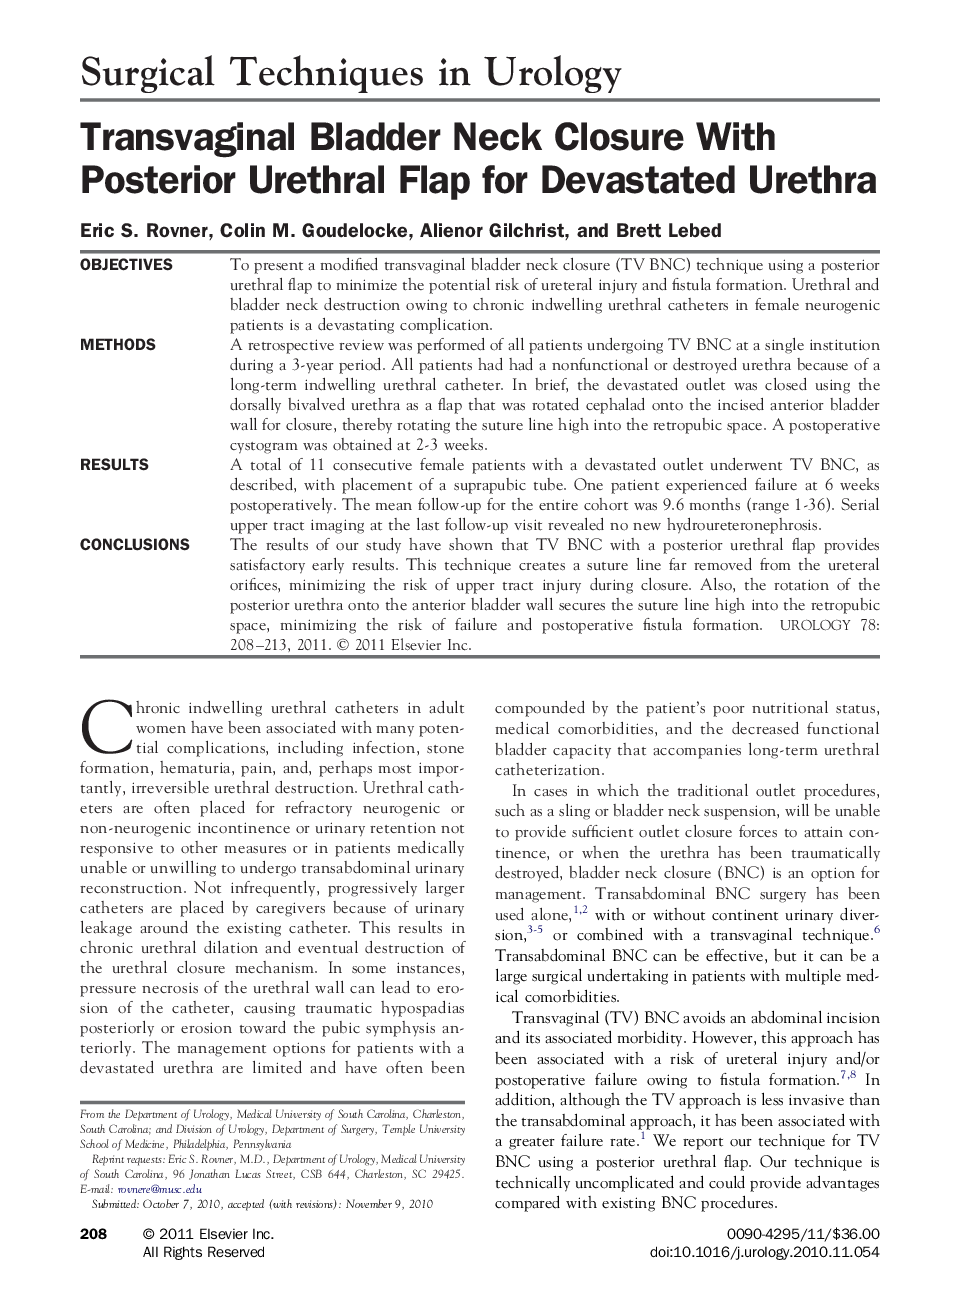 Transvaginal Bladder Neck Closure With Posterior Urethral Flap for Devastated Urethra